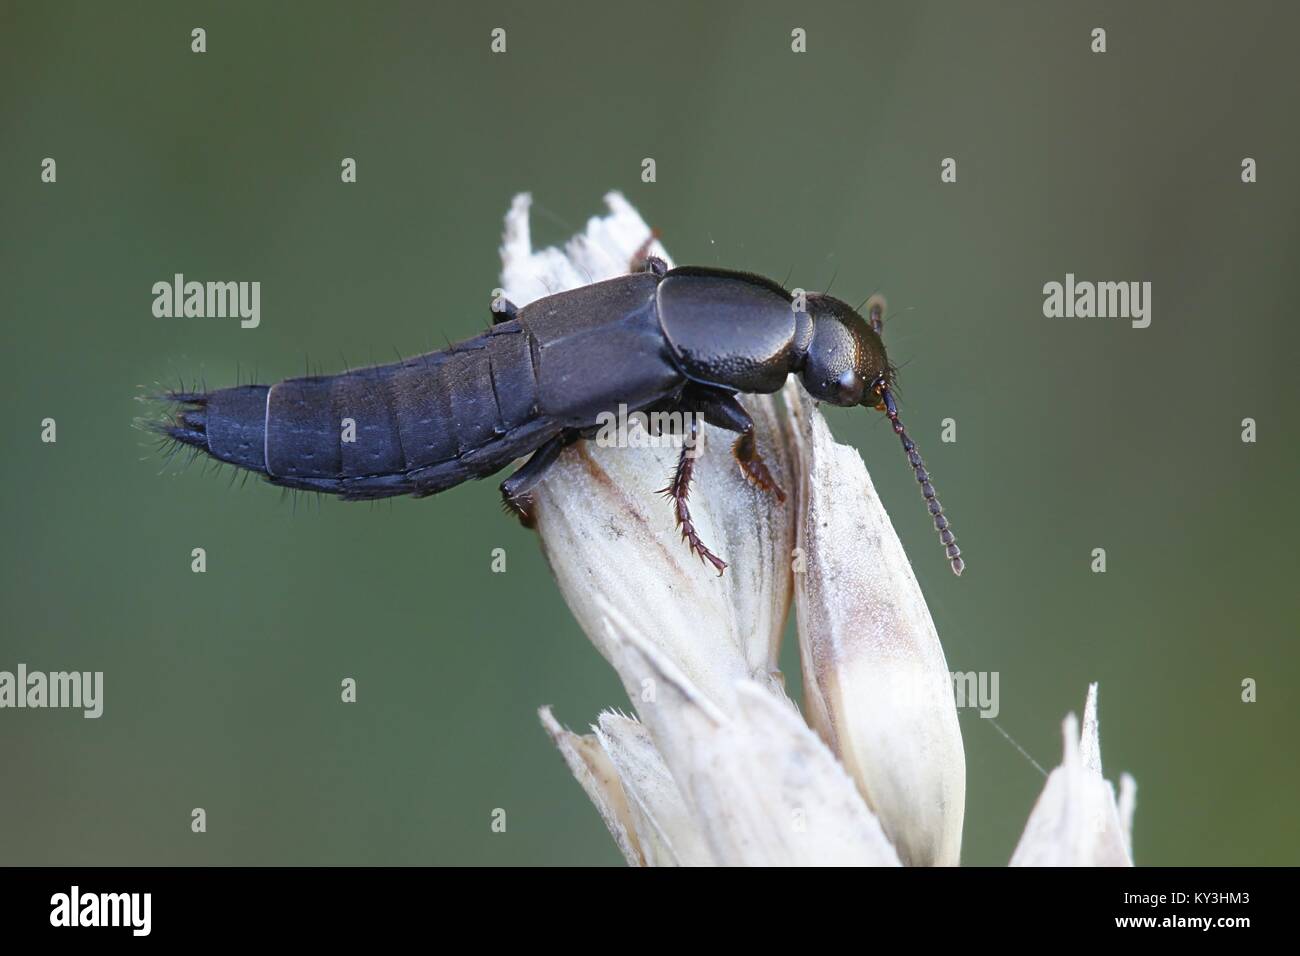 Rove beetle in posa per il frumento duro Foto Stock